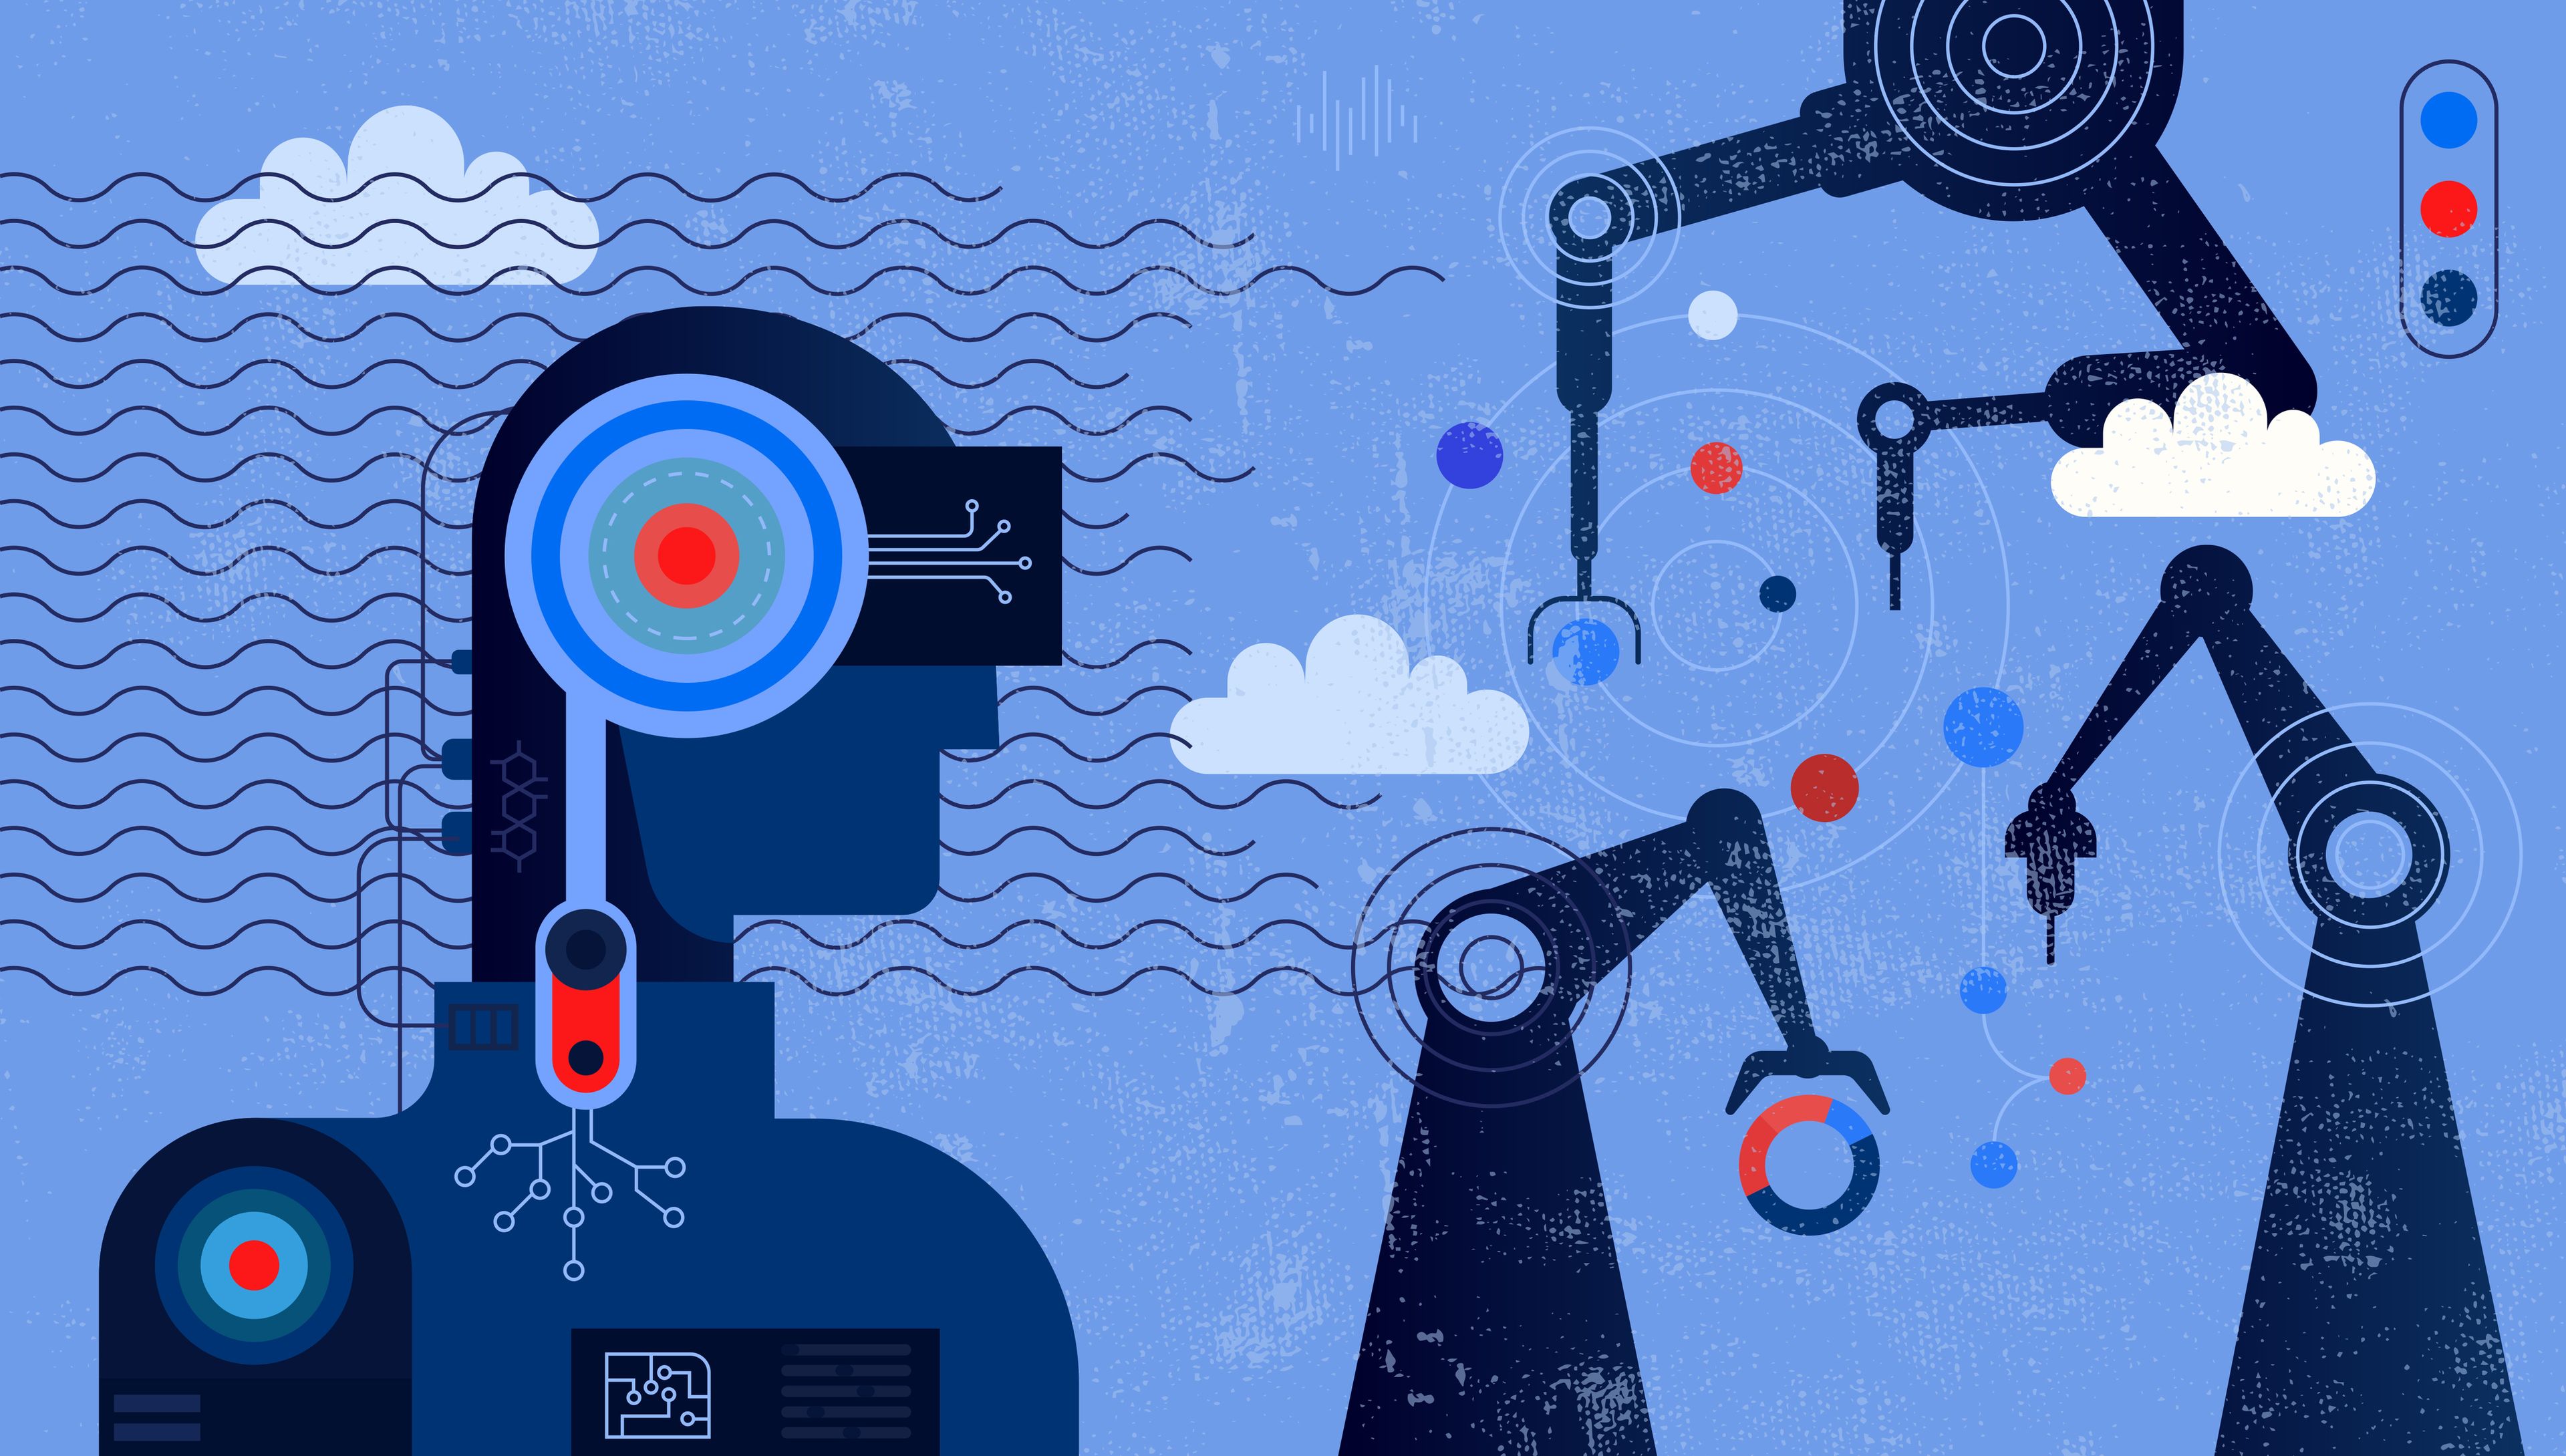 Ilustración sobre el futuro del trabajo y la automatización o robotización